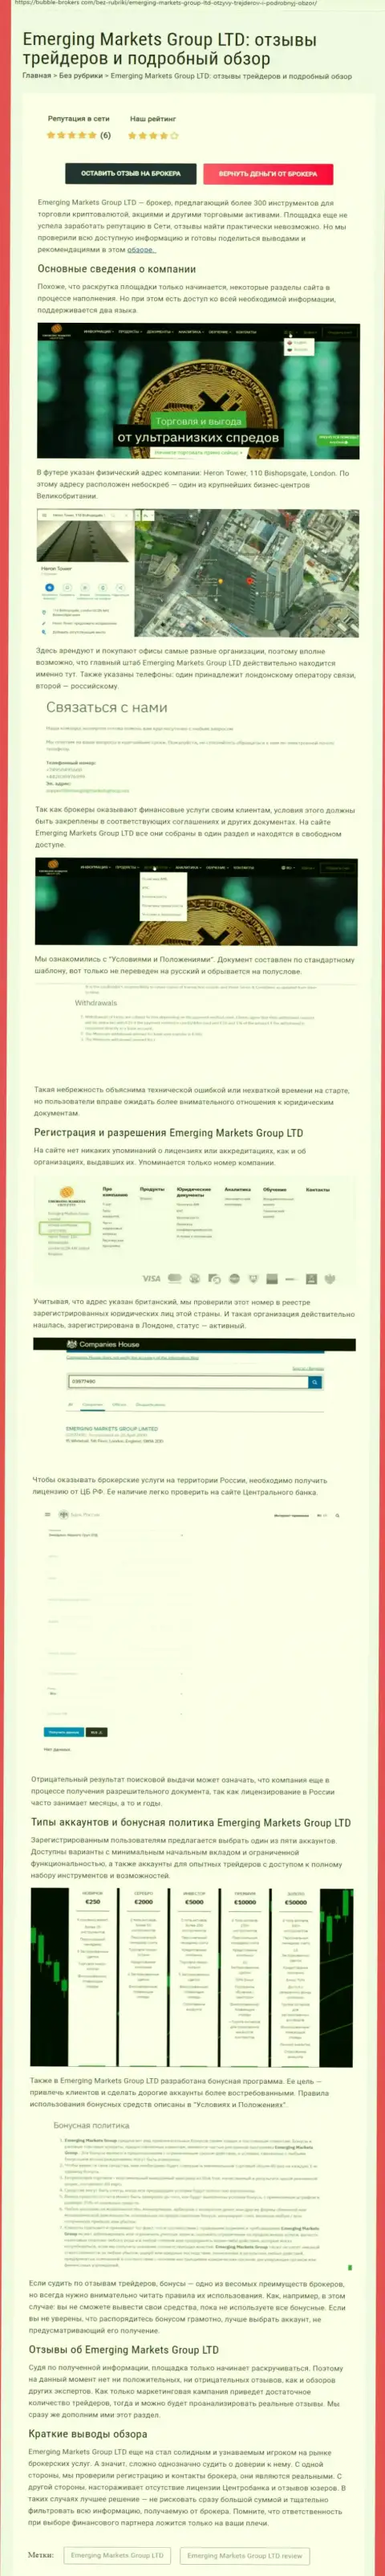 Сайт бубле брокерс ком опубликовал обзор деятельности дилинговой организации EmergingMarkets Group